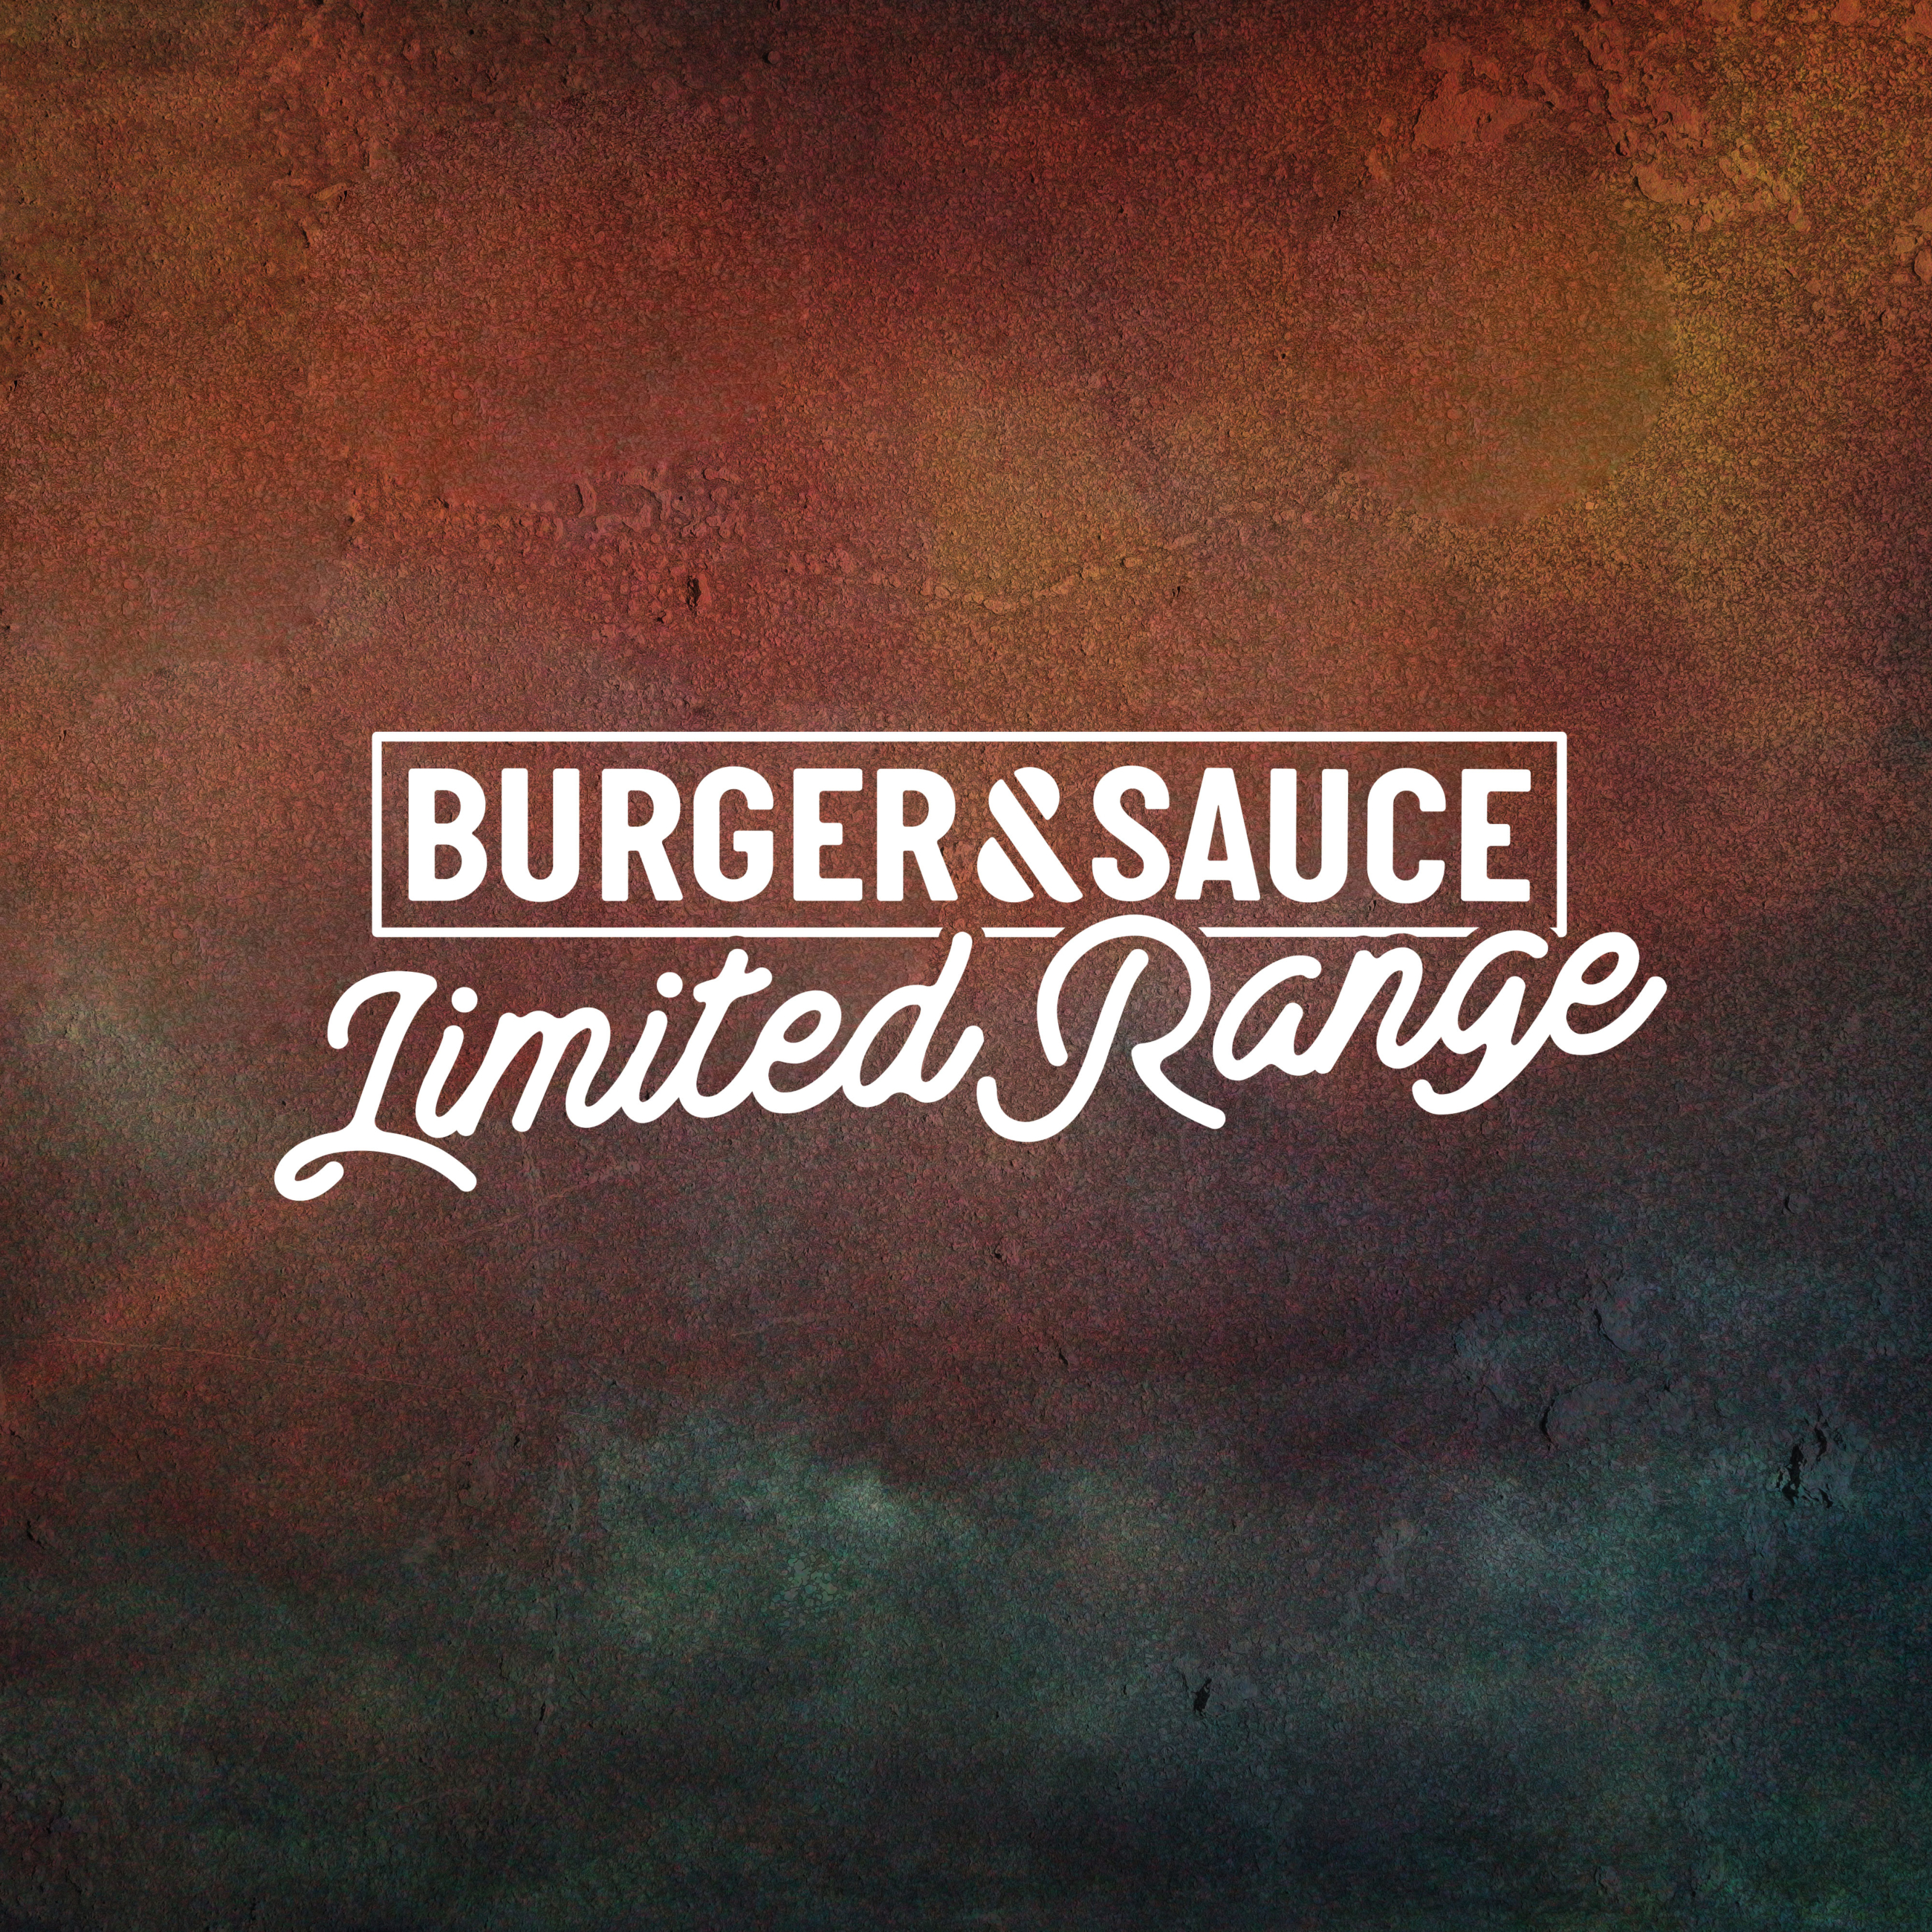 Burger & Sauce Limited Range Logo Design